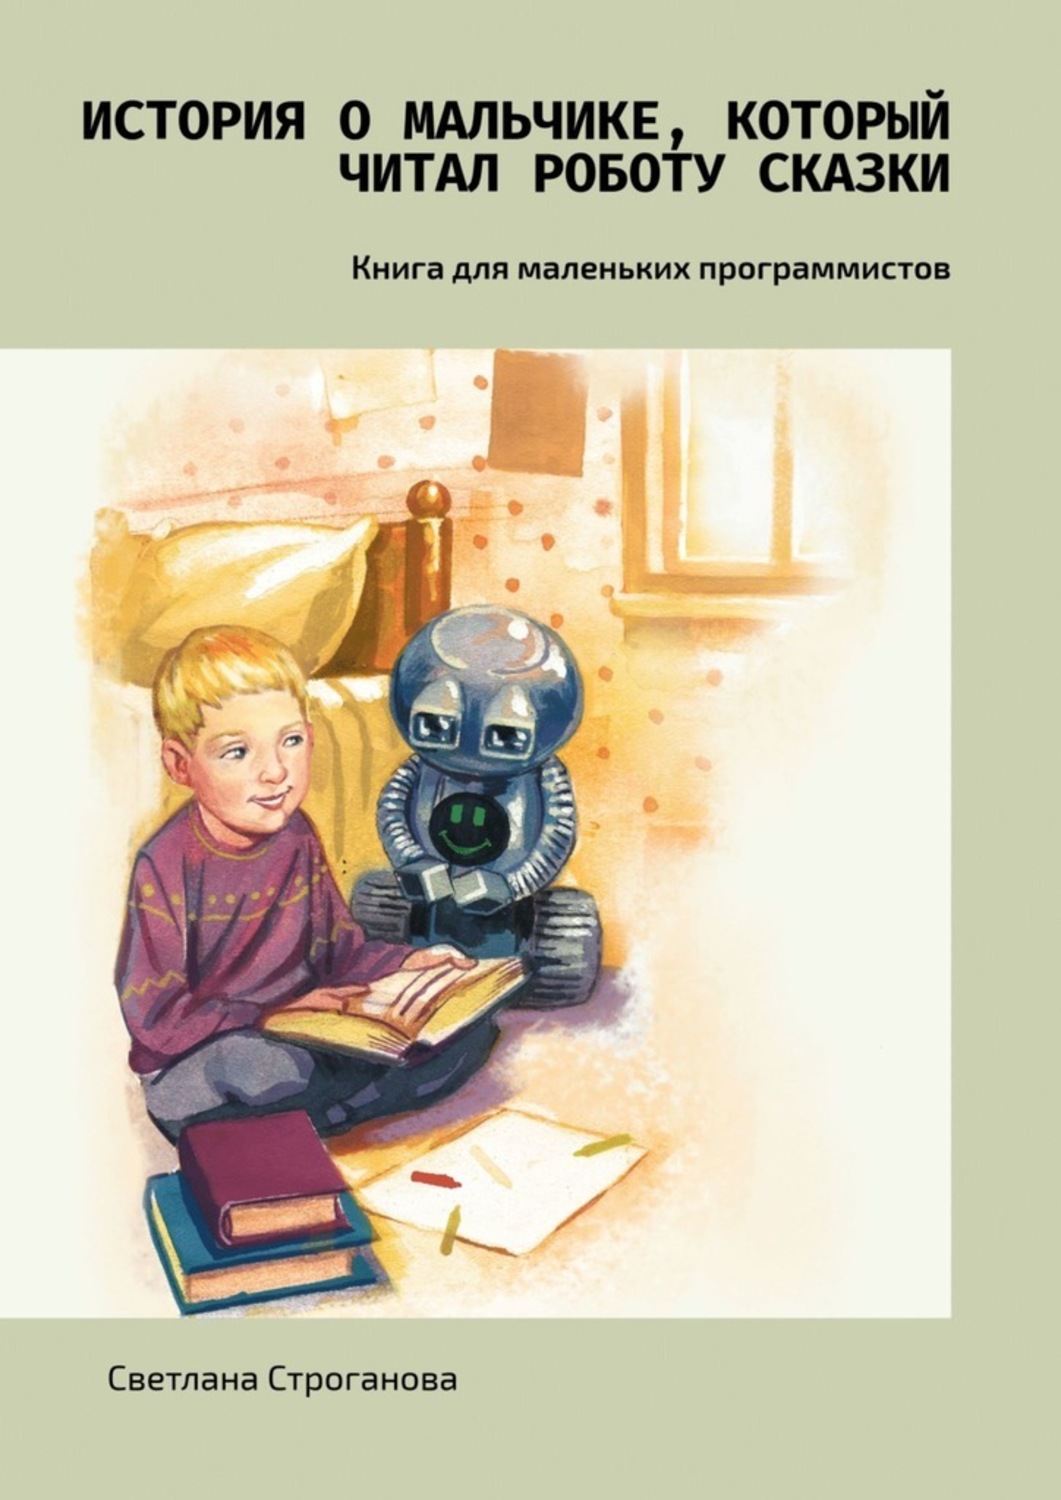 Читать про робота. Рассказ про робота для детей. Сказка про робота читать. История роботов книга. Сказка про робота для детей.